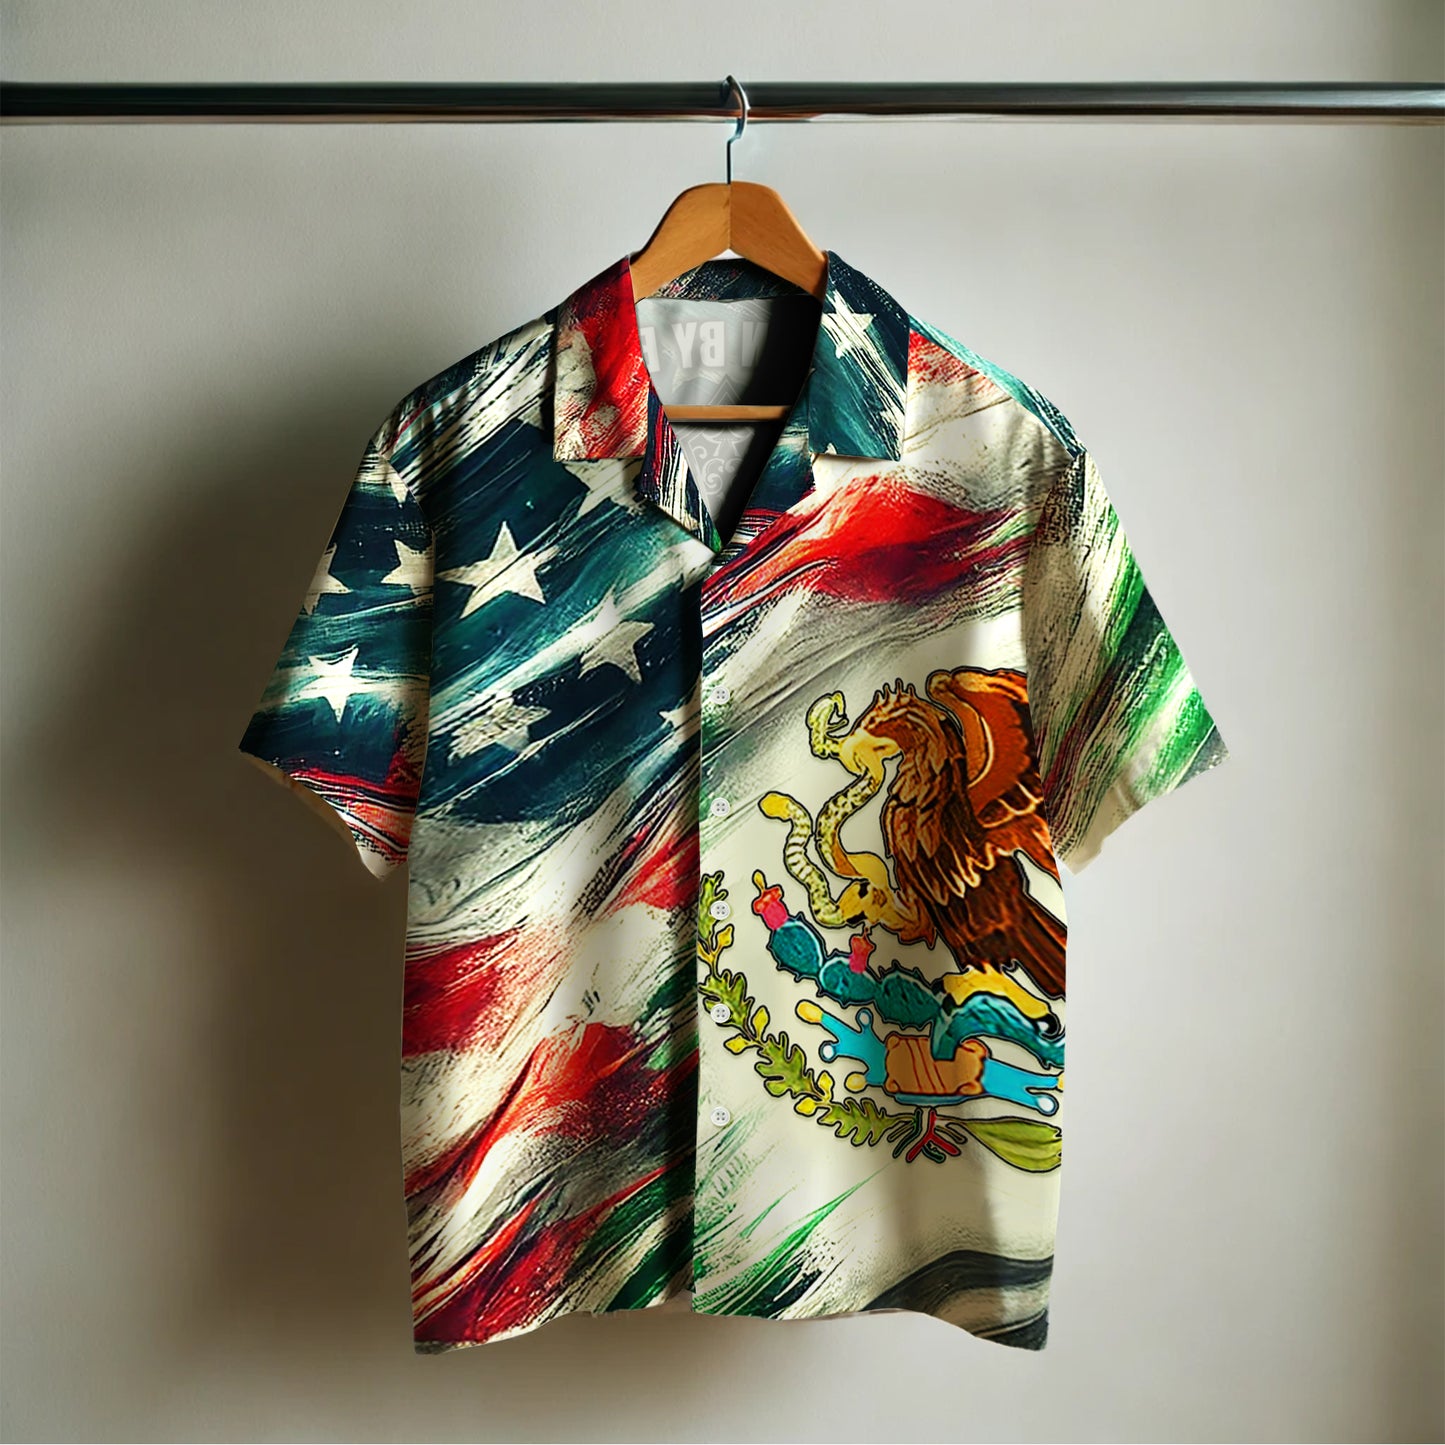 Mexicano de sangre, americano de nacimiento - Camisa hawaiana unisex personalizada - HW_MX53